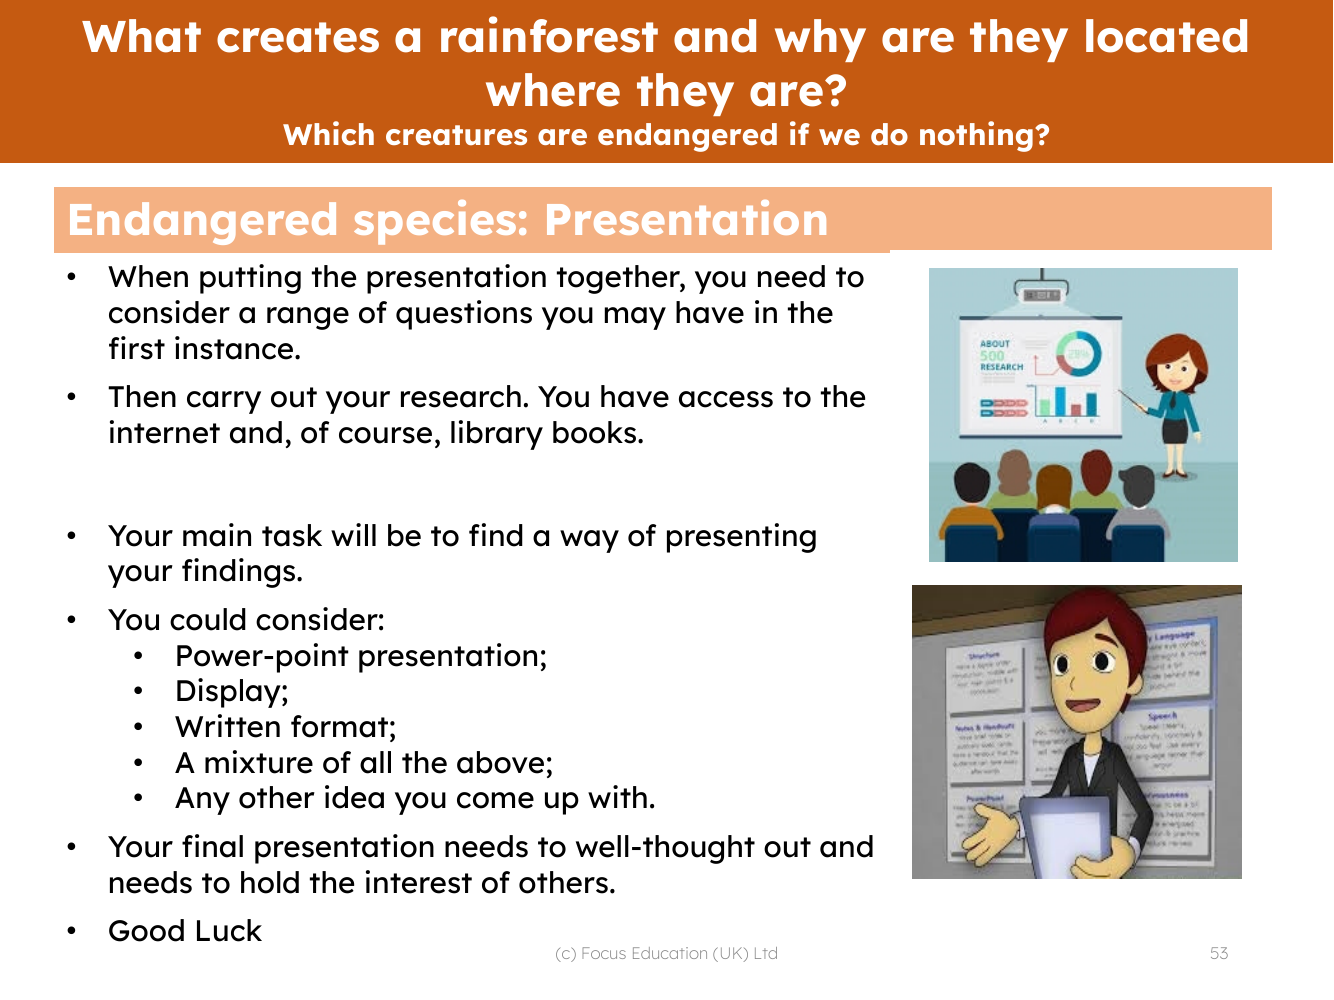 Endangered species - Presentation task